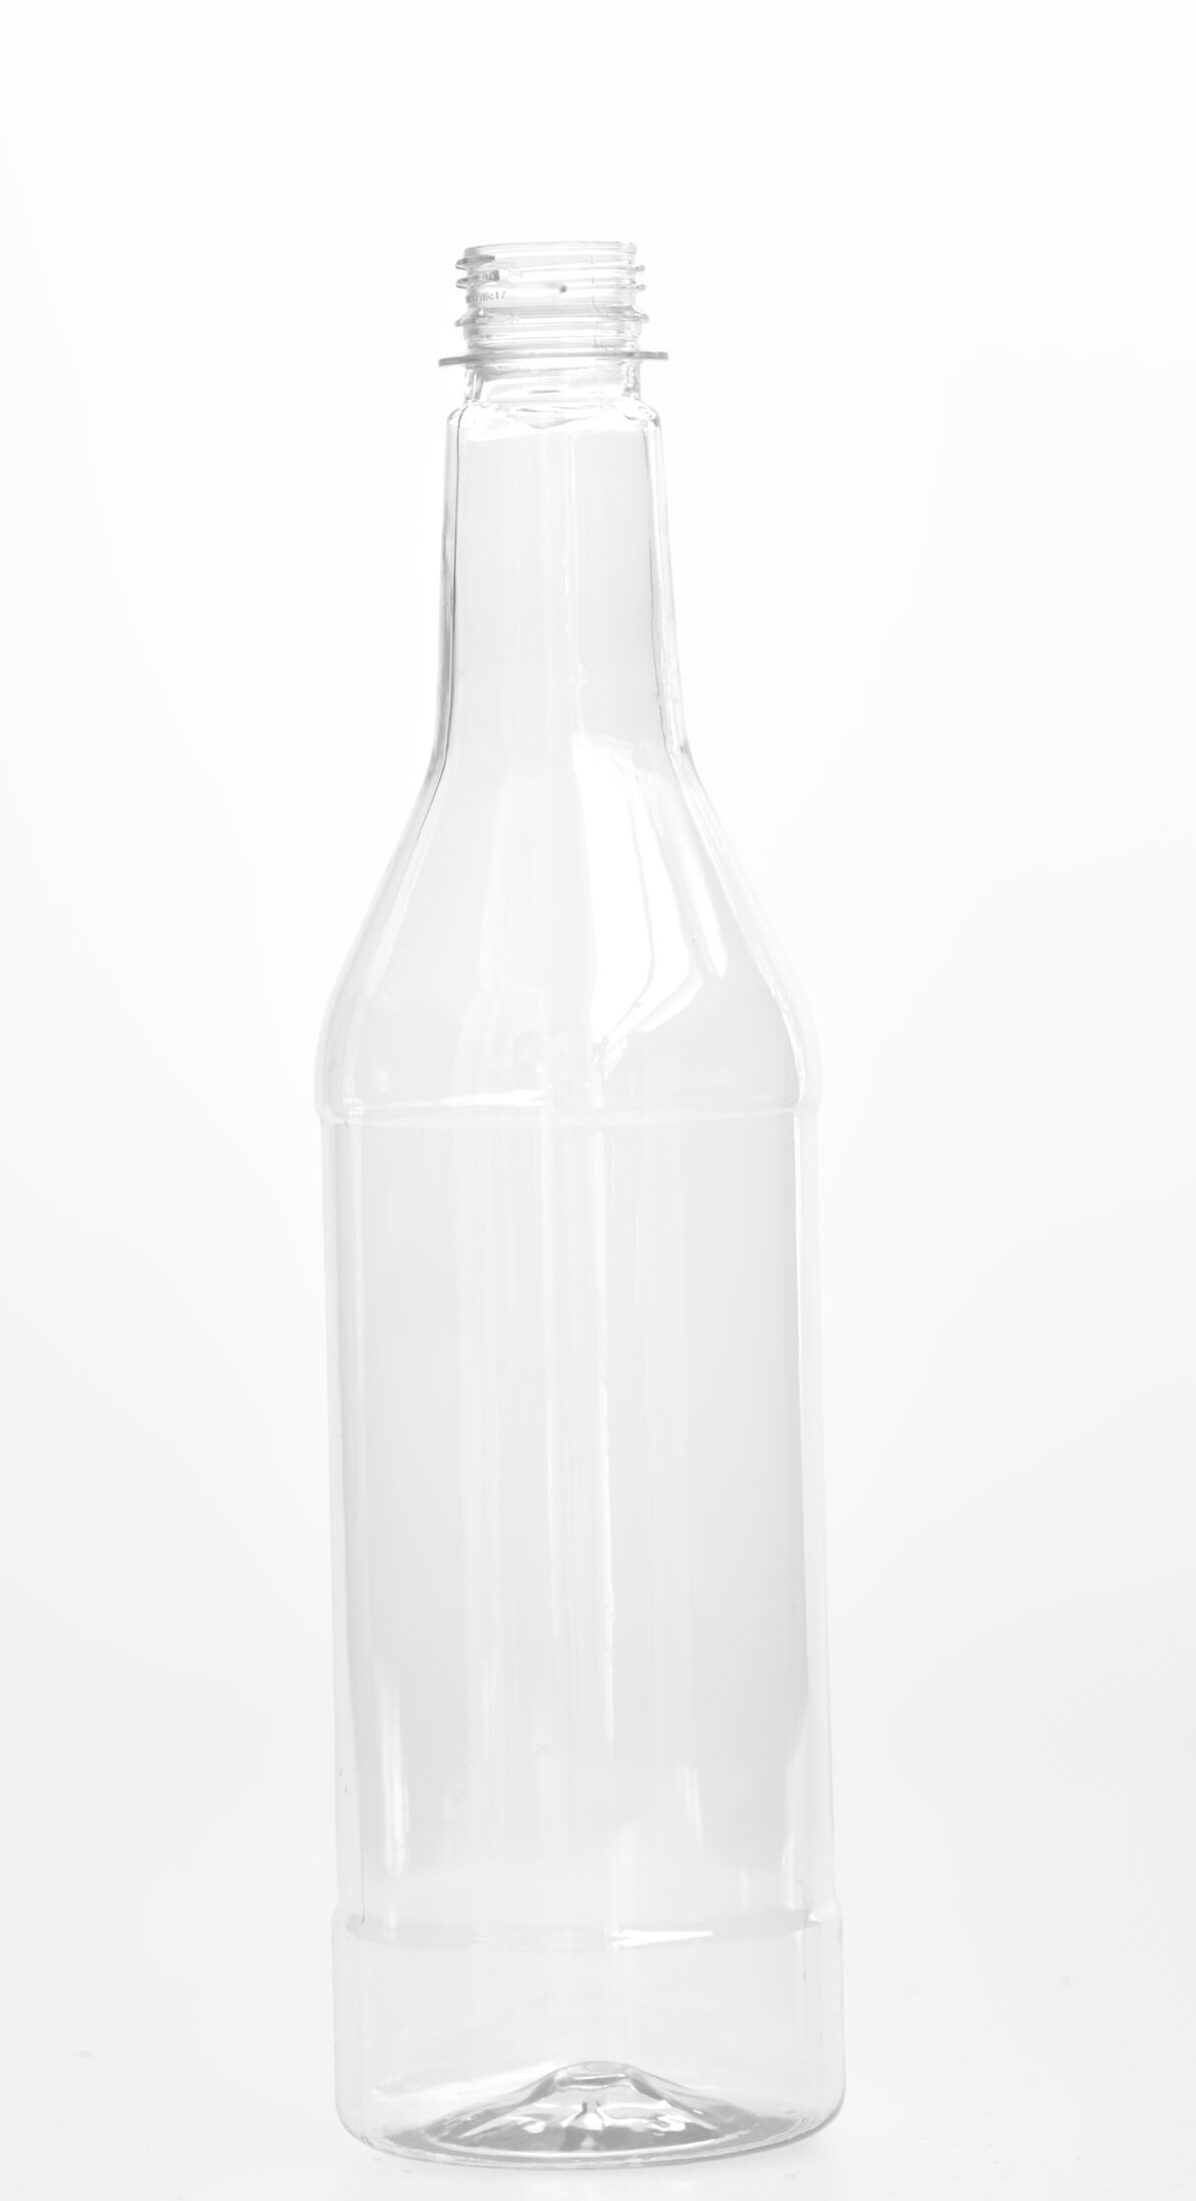 750cc / 25.5oz / 0.75 ltr / 750ml Clear Plastic PET Bottle-image